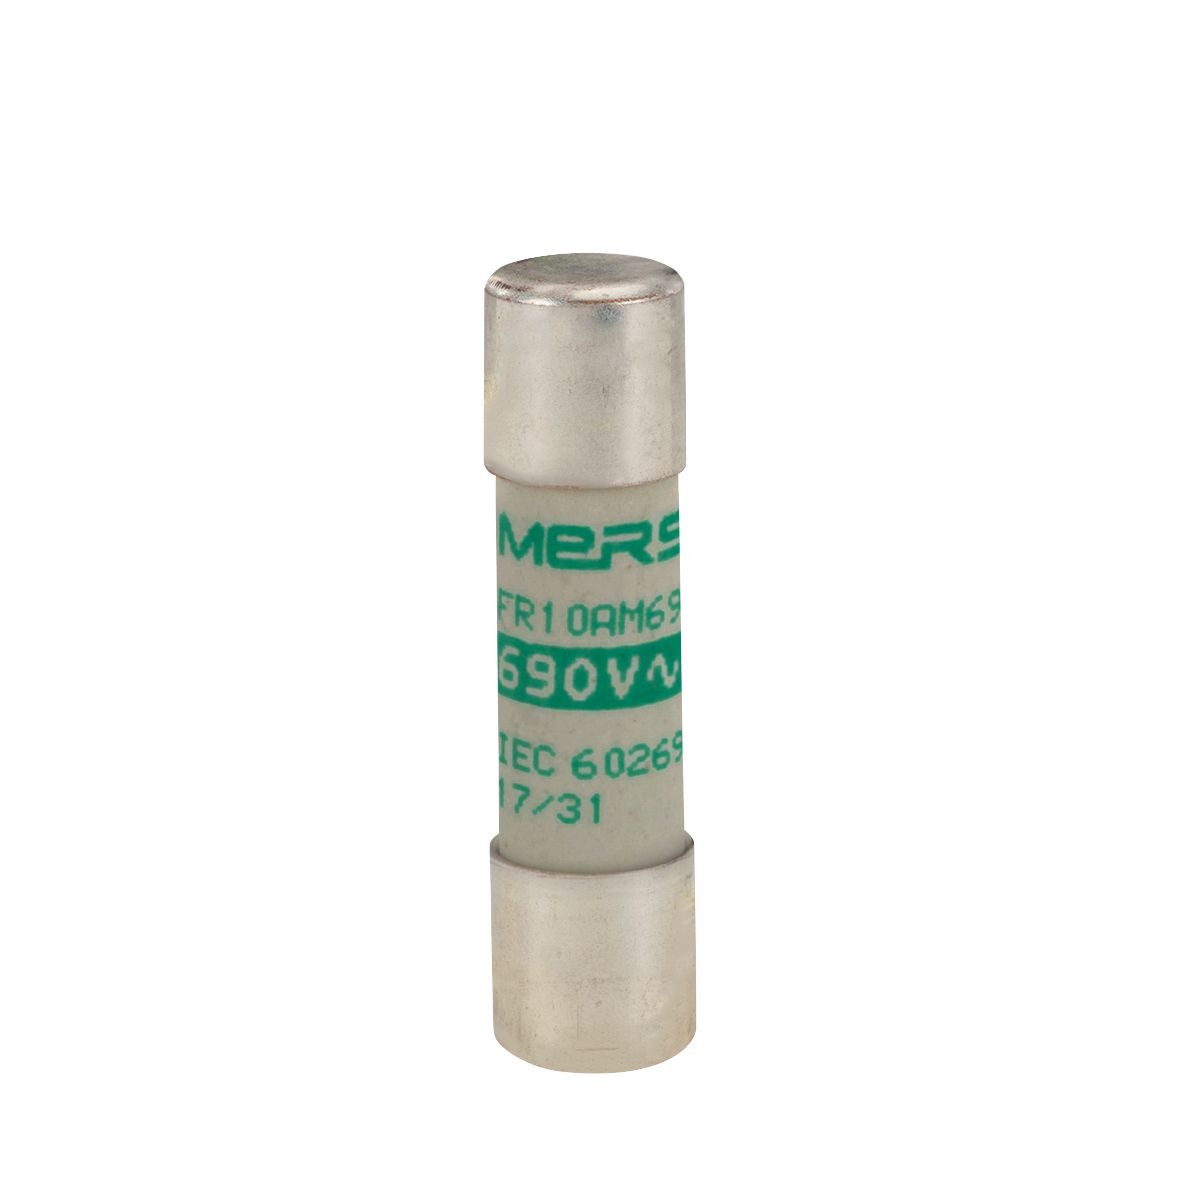 N302784 - Cylindrical fuse-link aM 690VAC 10.3x38, 10A